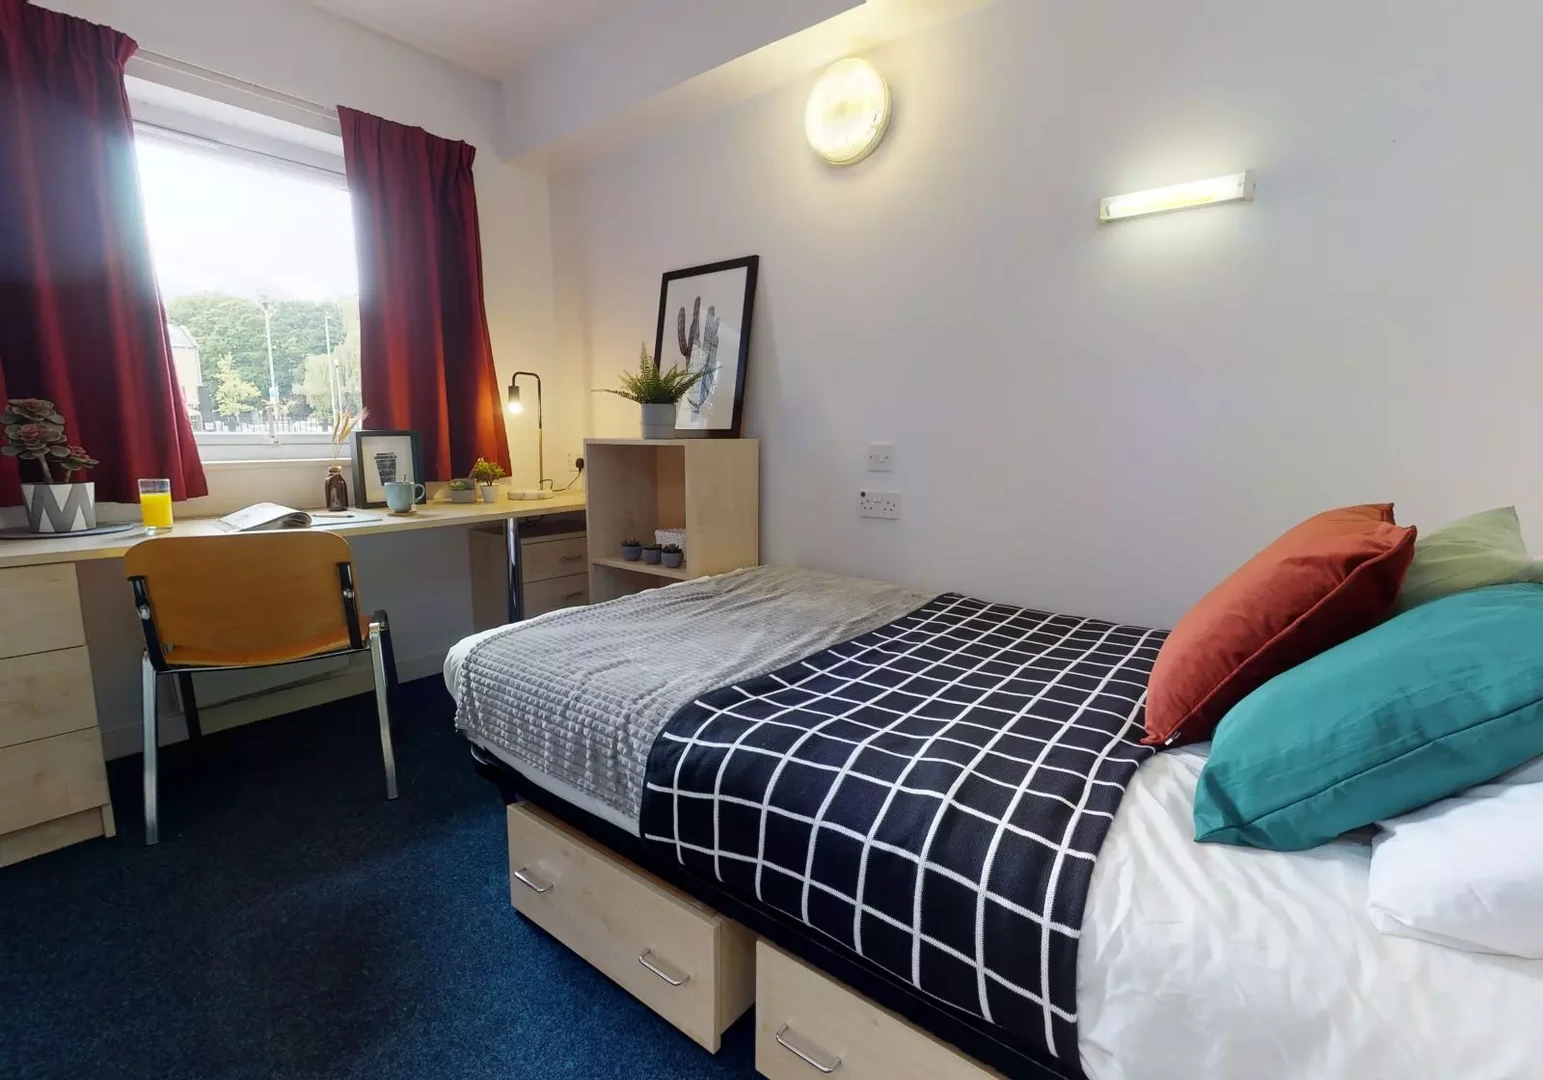 Quarto para alugar num apartamento partilhado em huddersfield